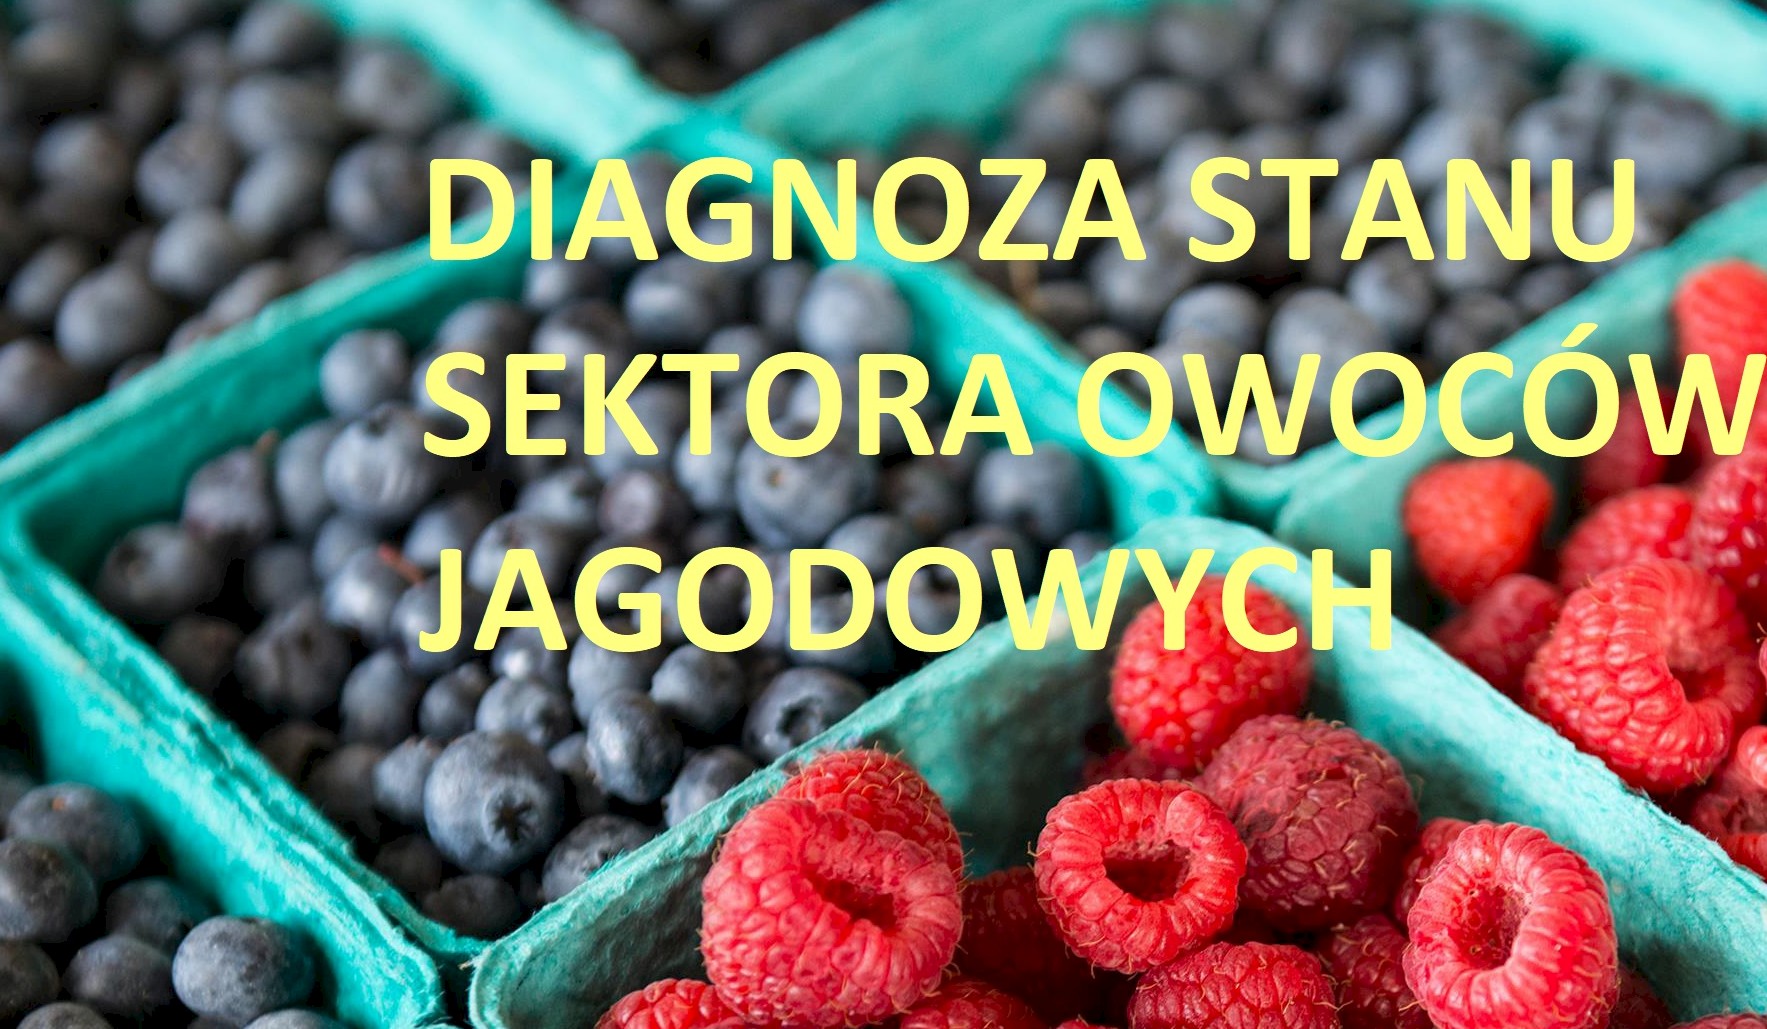 Diagnoza stanu sektora owoców jagodowych